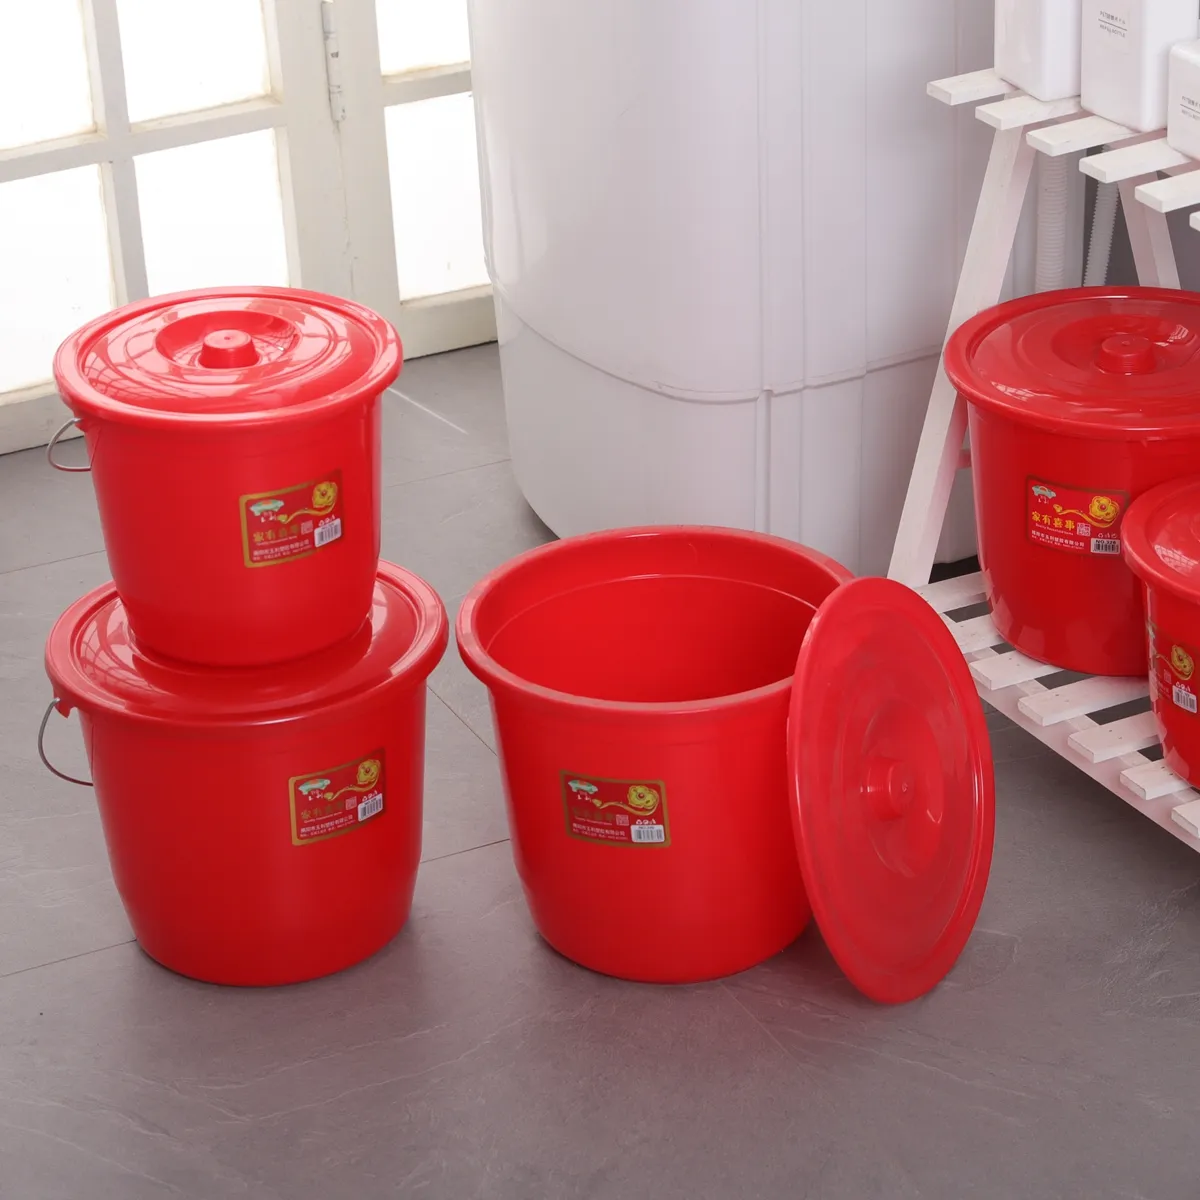 Secchio d'acqua per secchio in plastica rossa da bagno diretto in fabbrica con coperchio